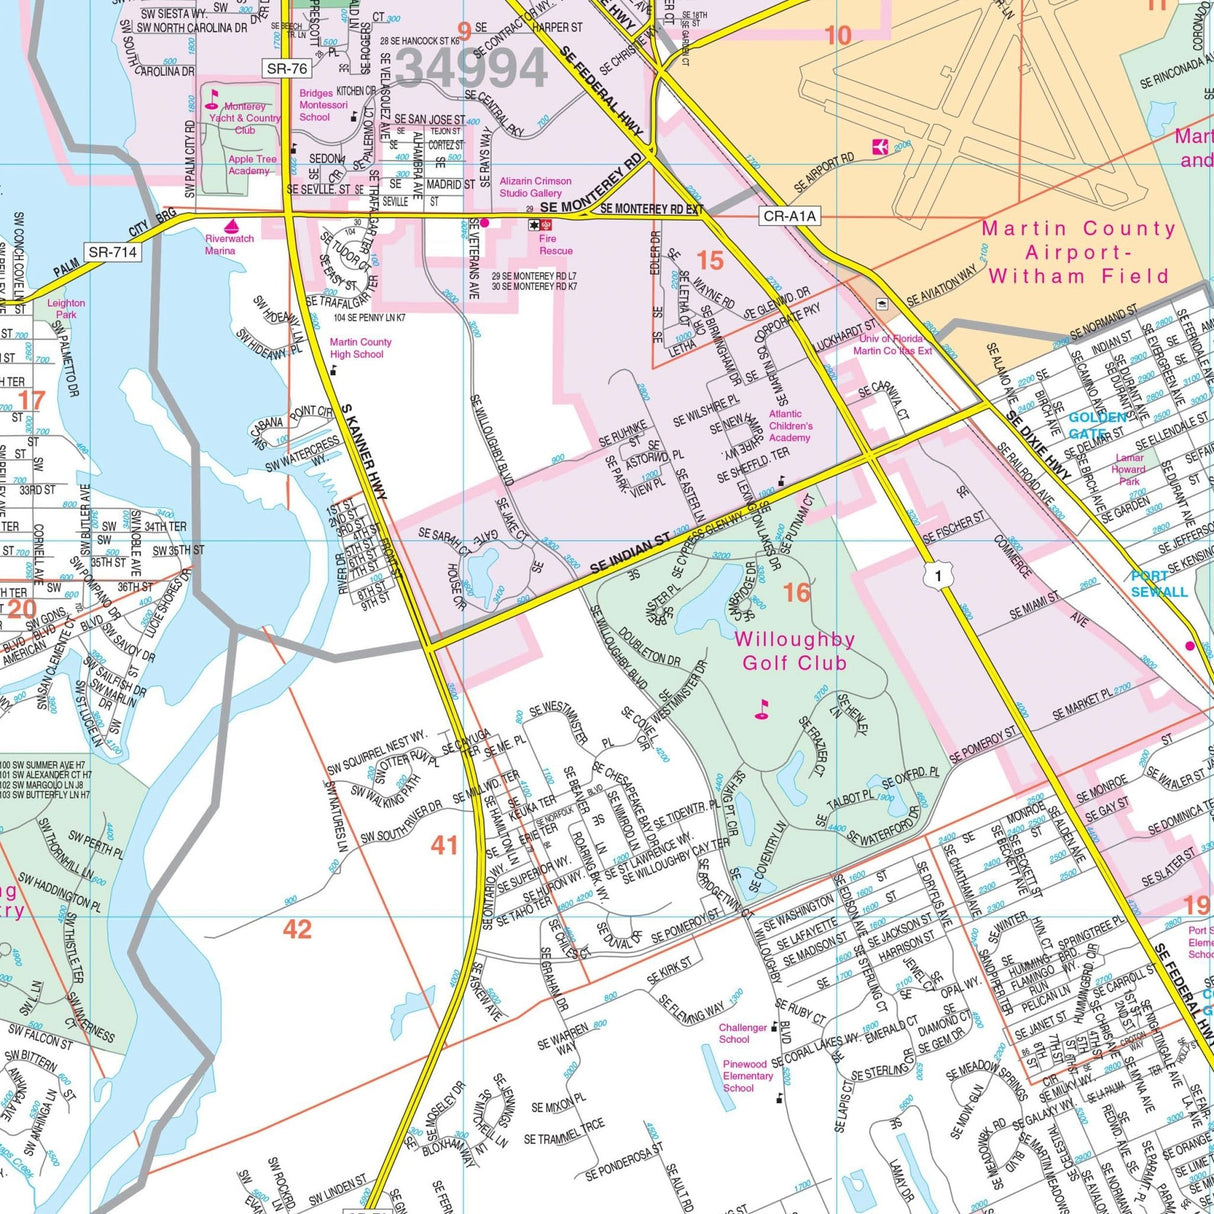 Stuart & Foam Core with Rails County, FL Wall Map - KA-C-FL-STUART-PAPER - Ultimate Globes